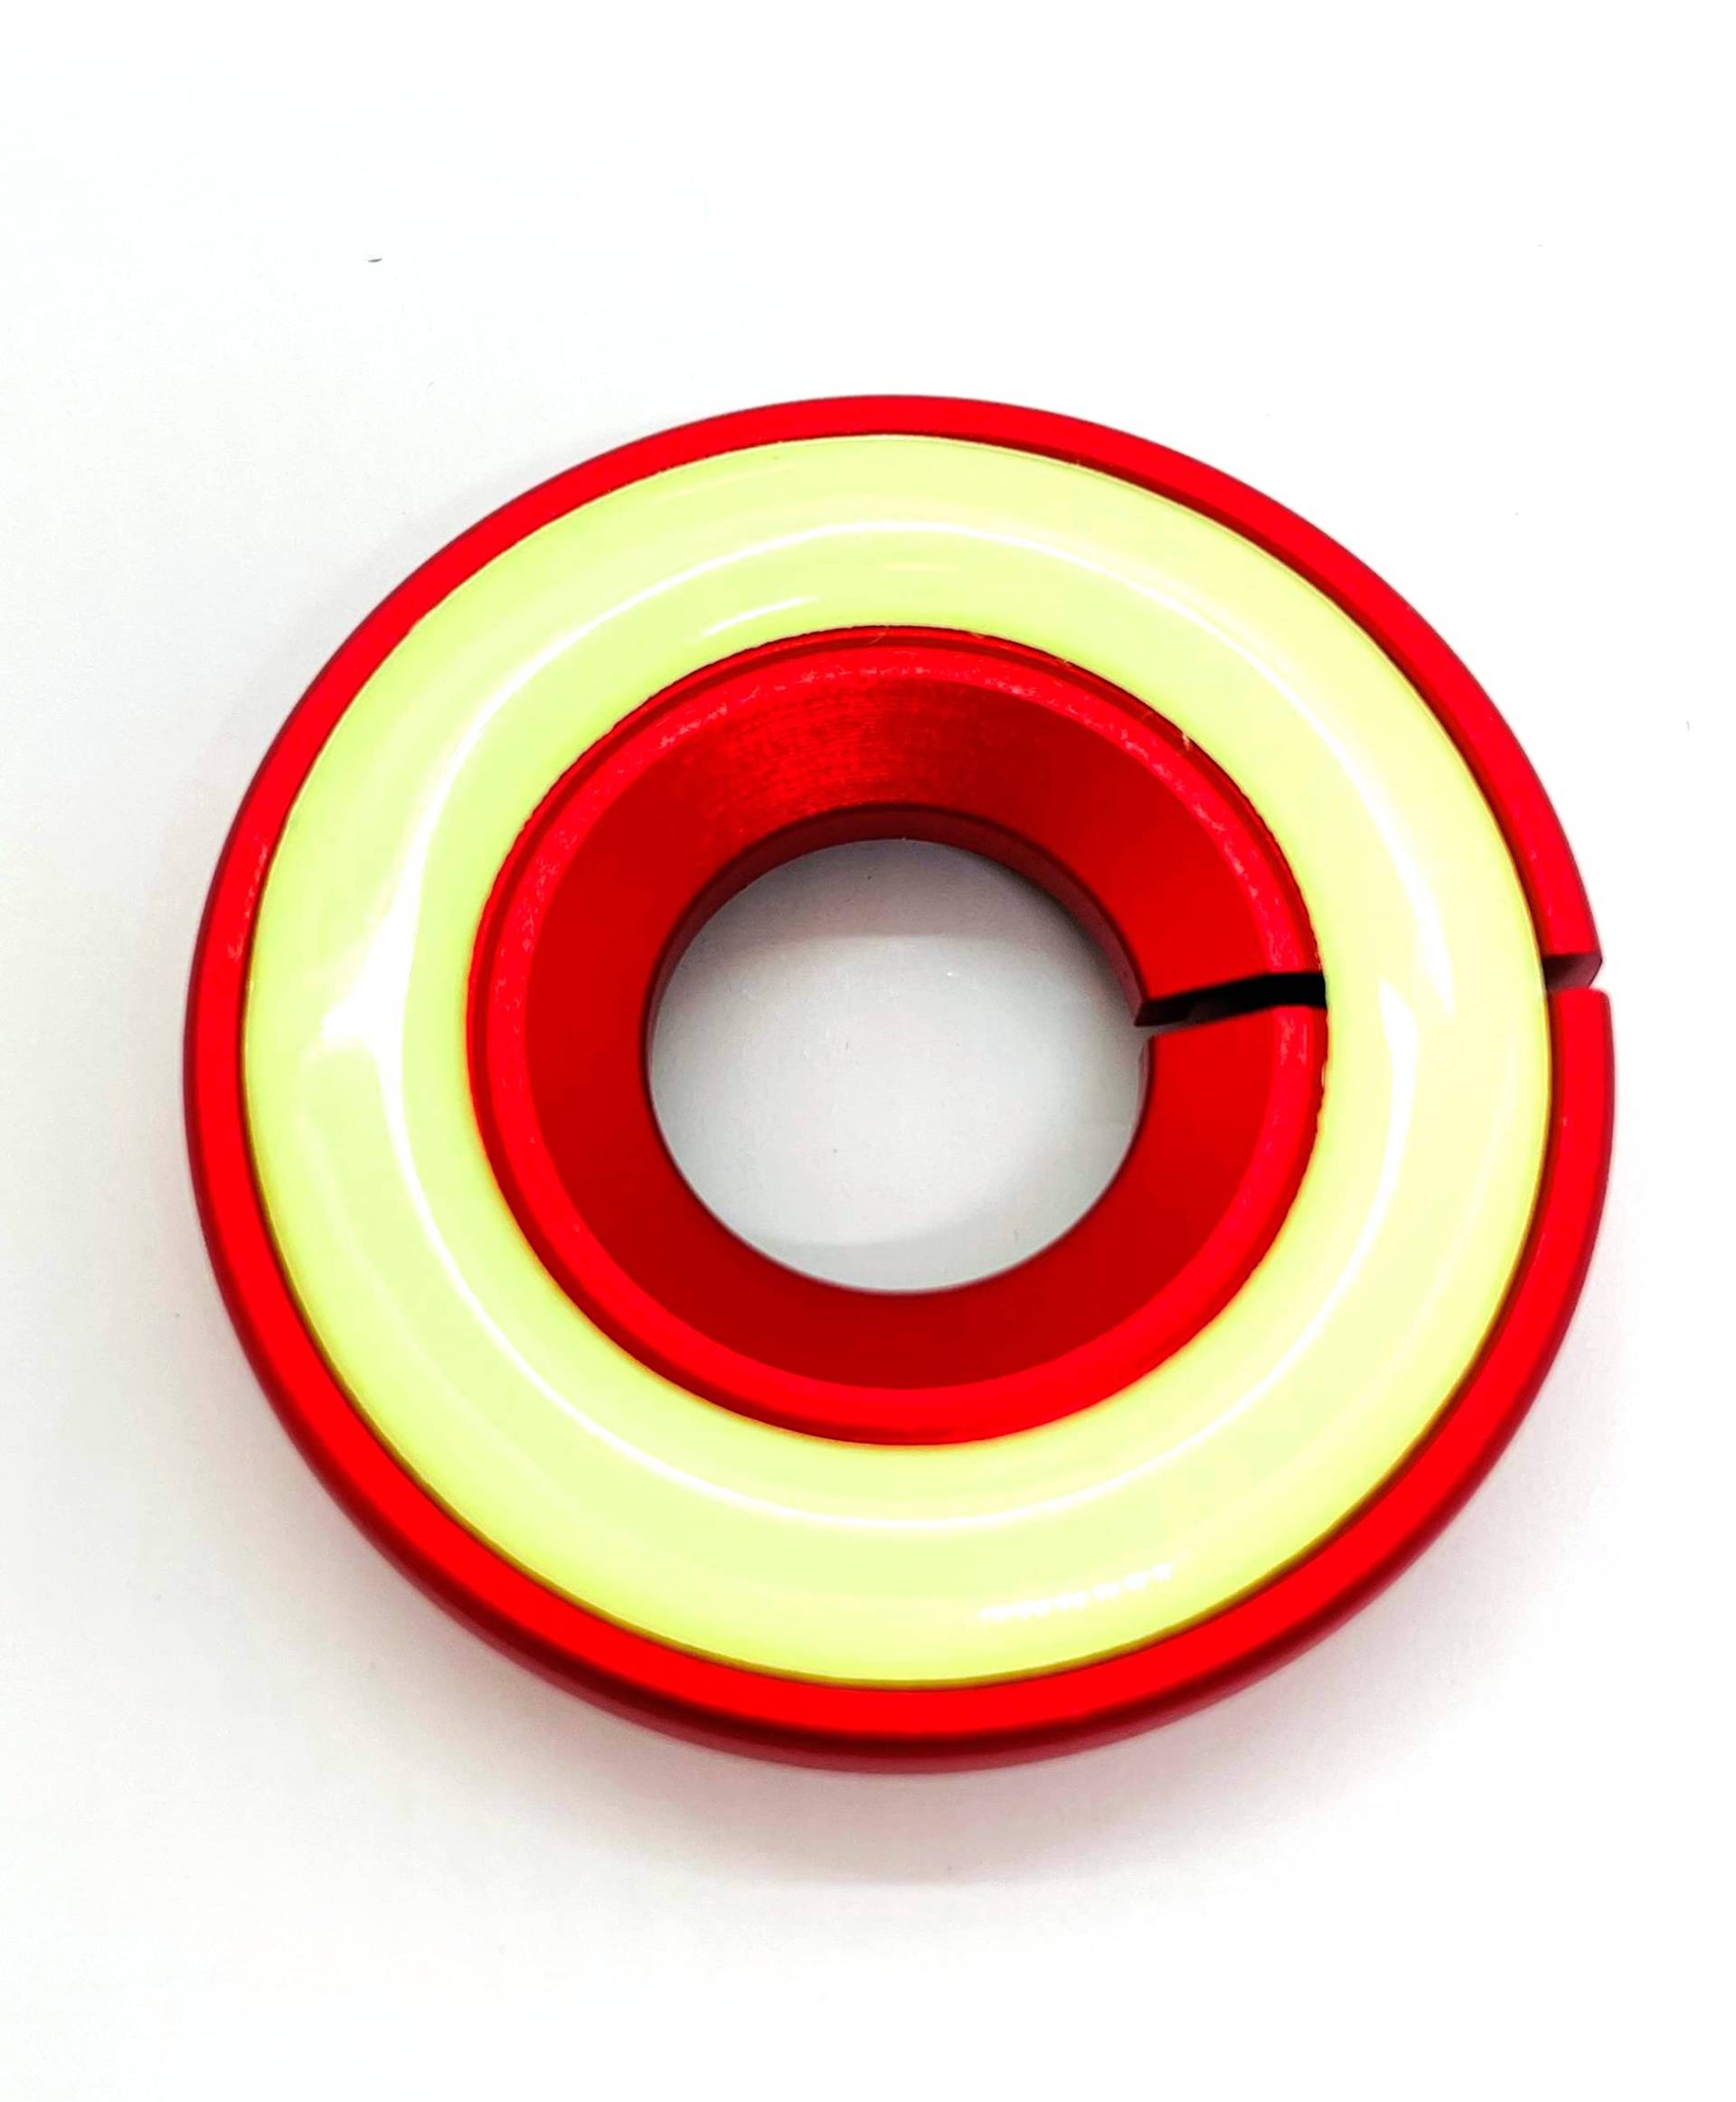 ROT/RED Leuchtend Zündschloss ABDECKUNG Ring Dekorative Aufkleber Schlüsselloch Schutz Ring Start Schalterknopf Alu Rahmen FLUORESZIEREND leuchtet im Dunkeln von INION